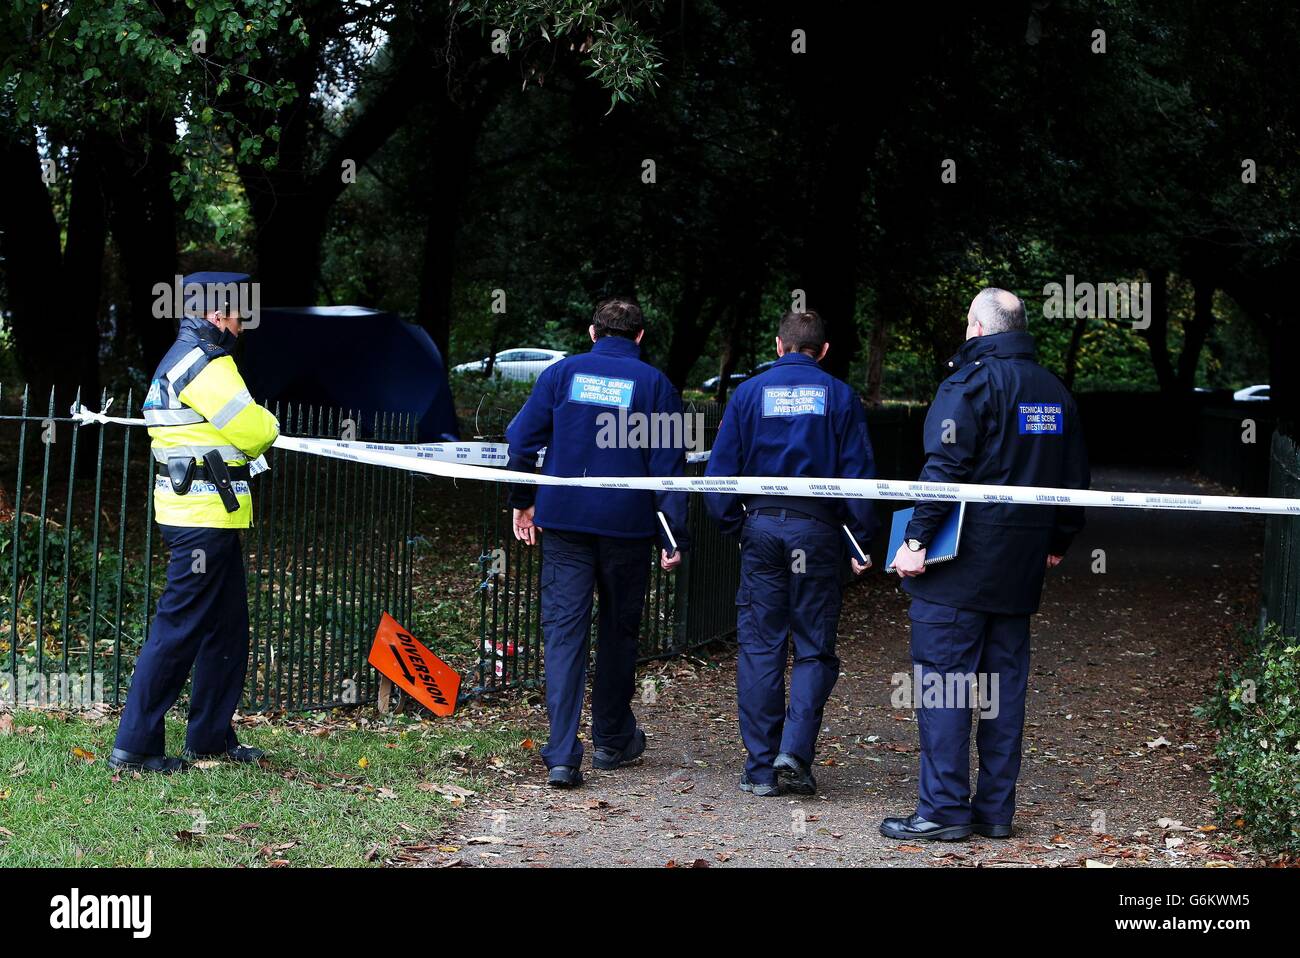 Membri del Technical Bureau Crime Scene Investigations unità presso la scena a Phoenix Park a Dublino, dove è stato trovato il corpo di un uomo. Foto Stock